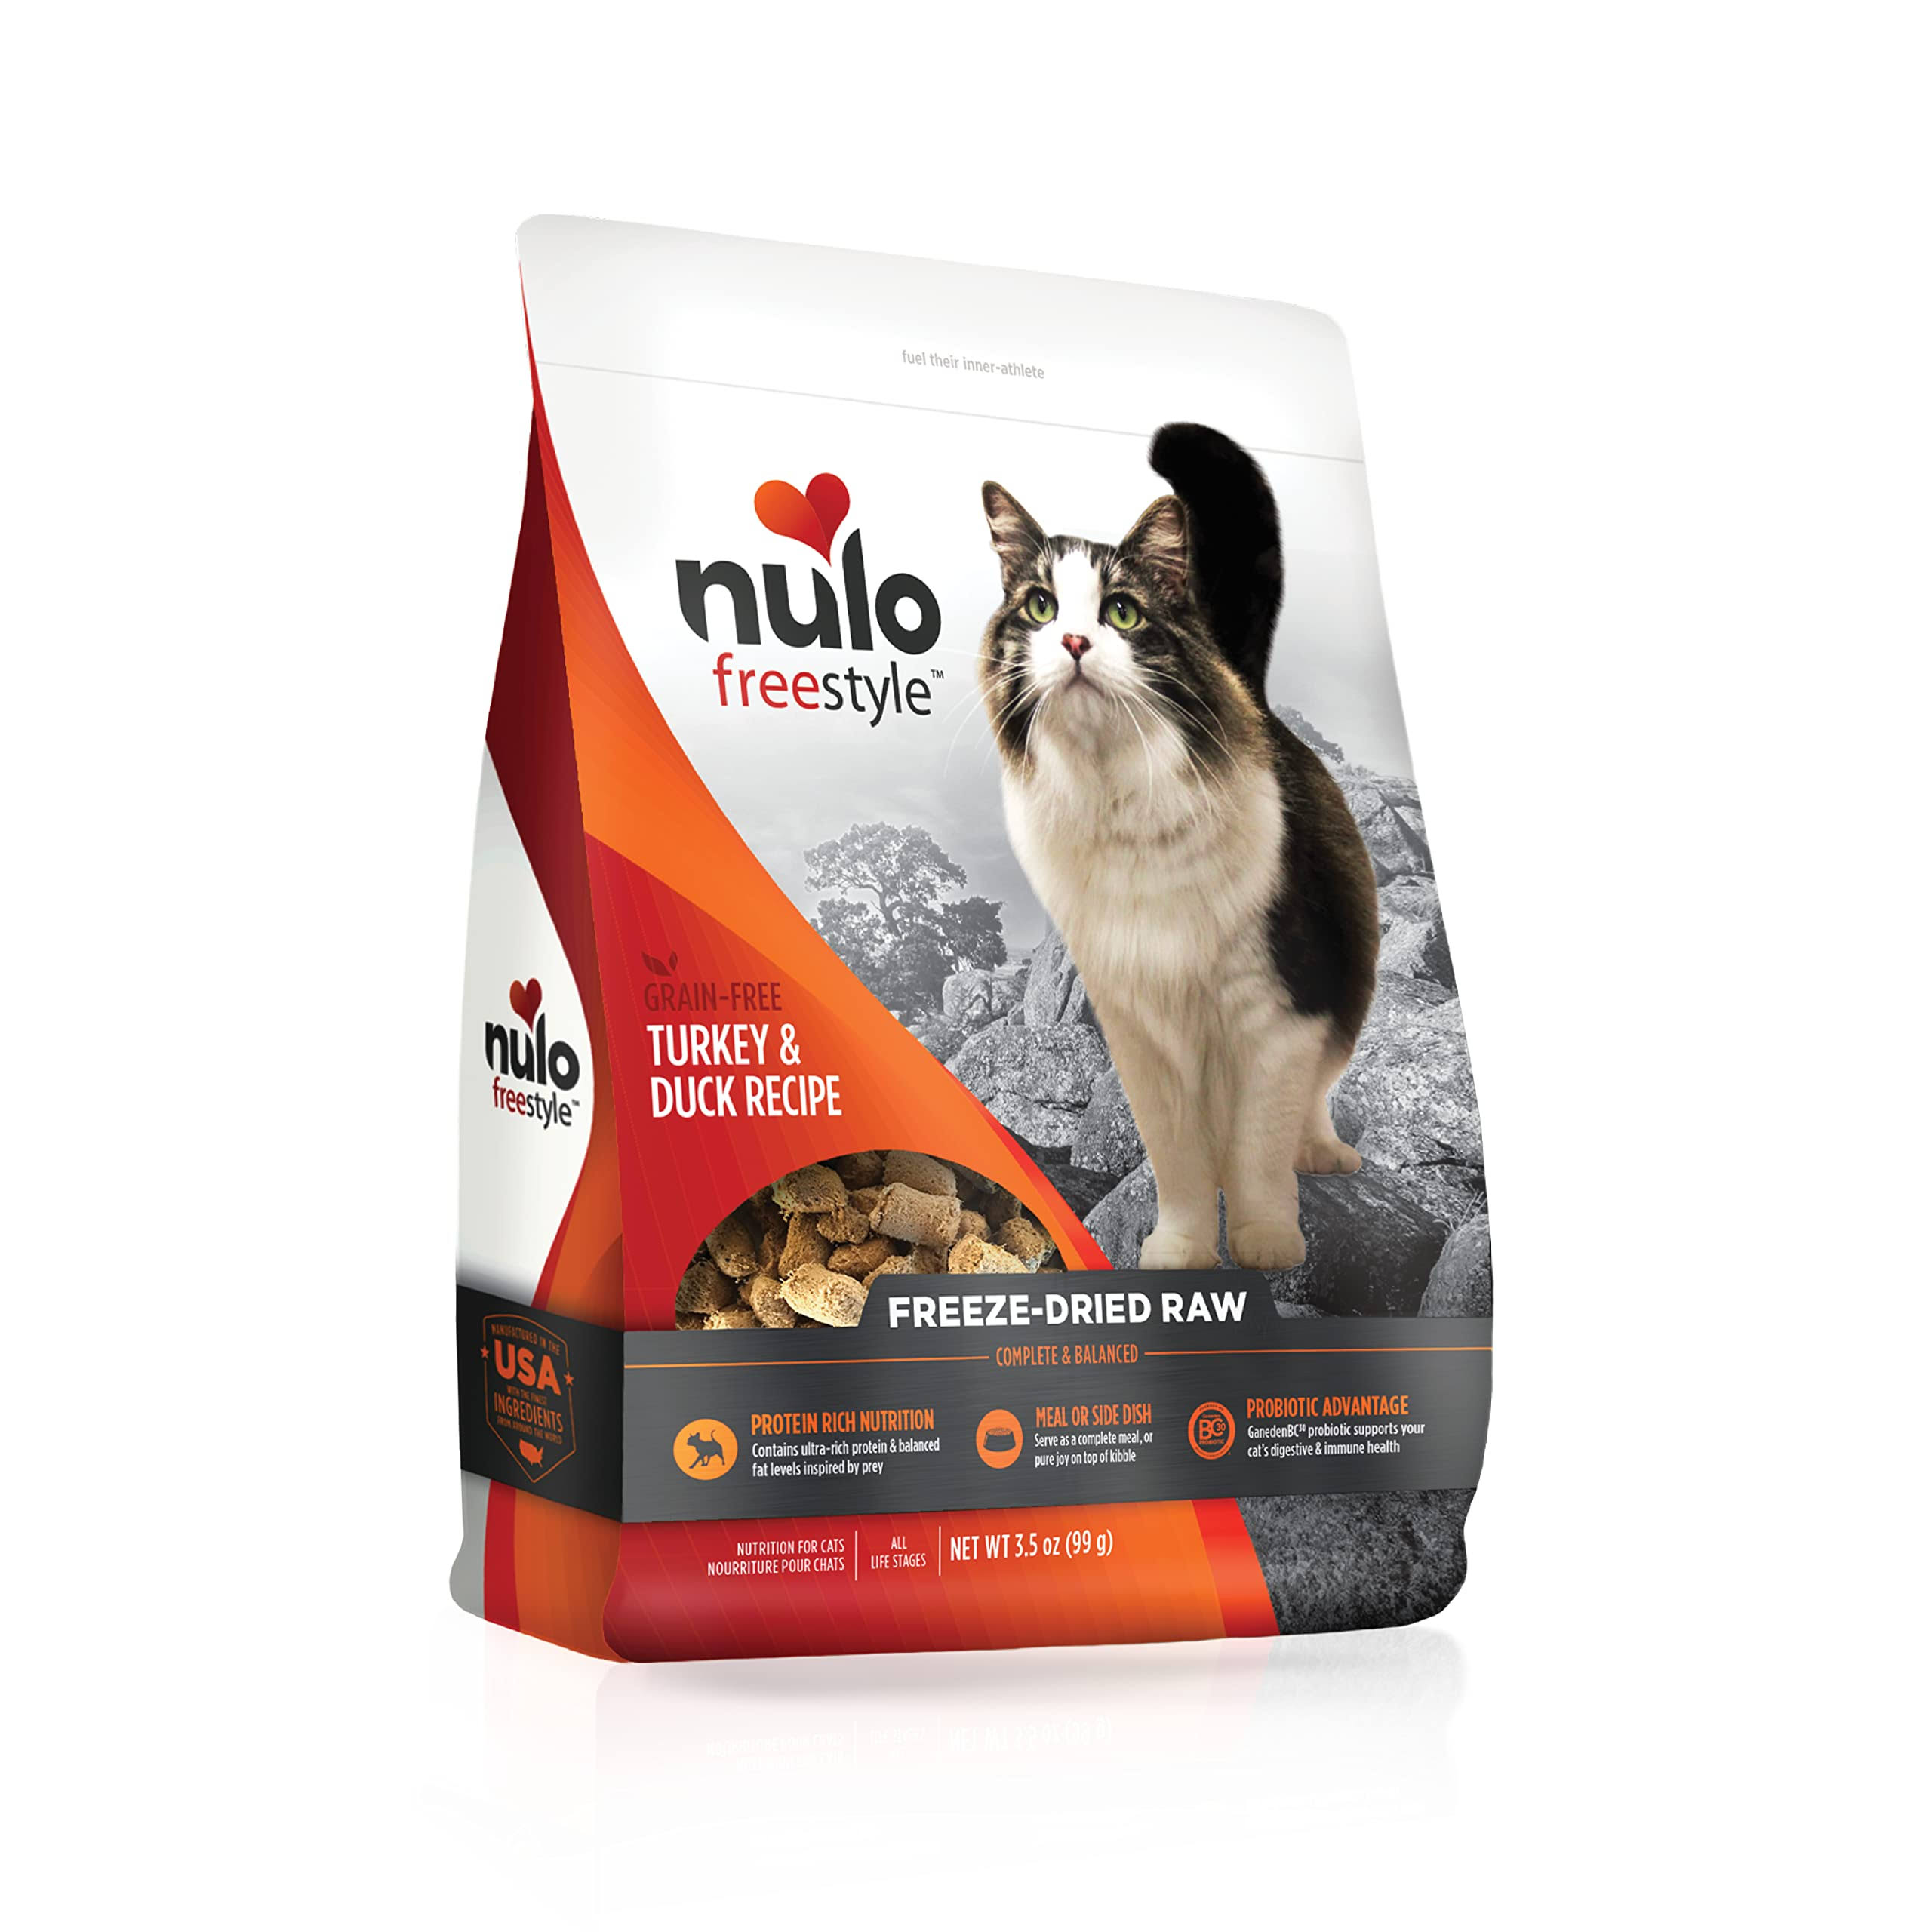 Nulo Freestyle Turkey & Duck Freeze-Dried Raw Cat Food, 3.5-oz